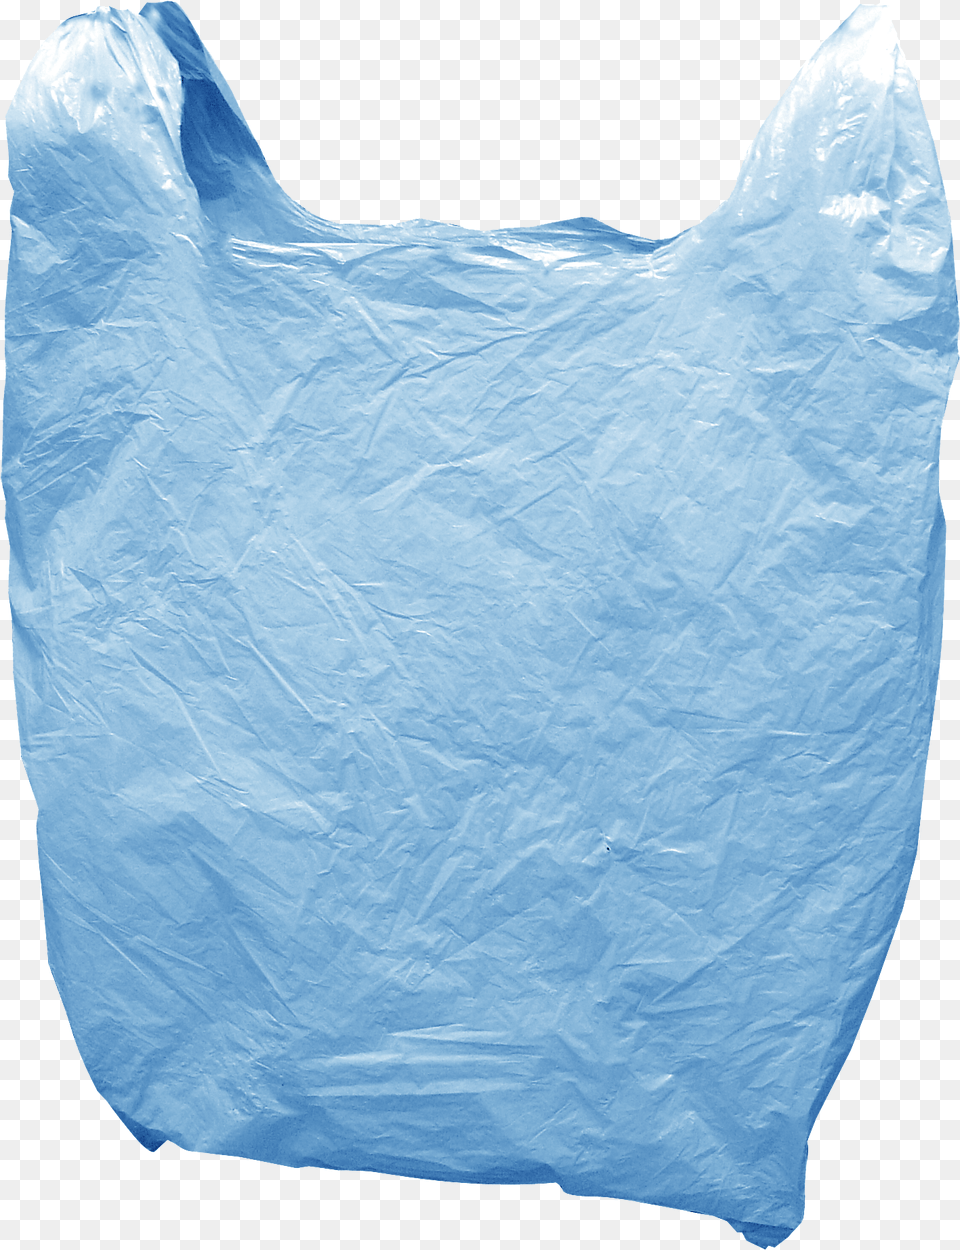 Trash Plastic Clipart Plastic Bag, Plastic Bag Free Transparent Png